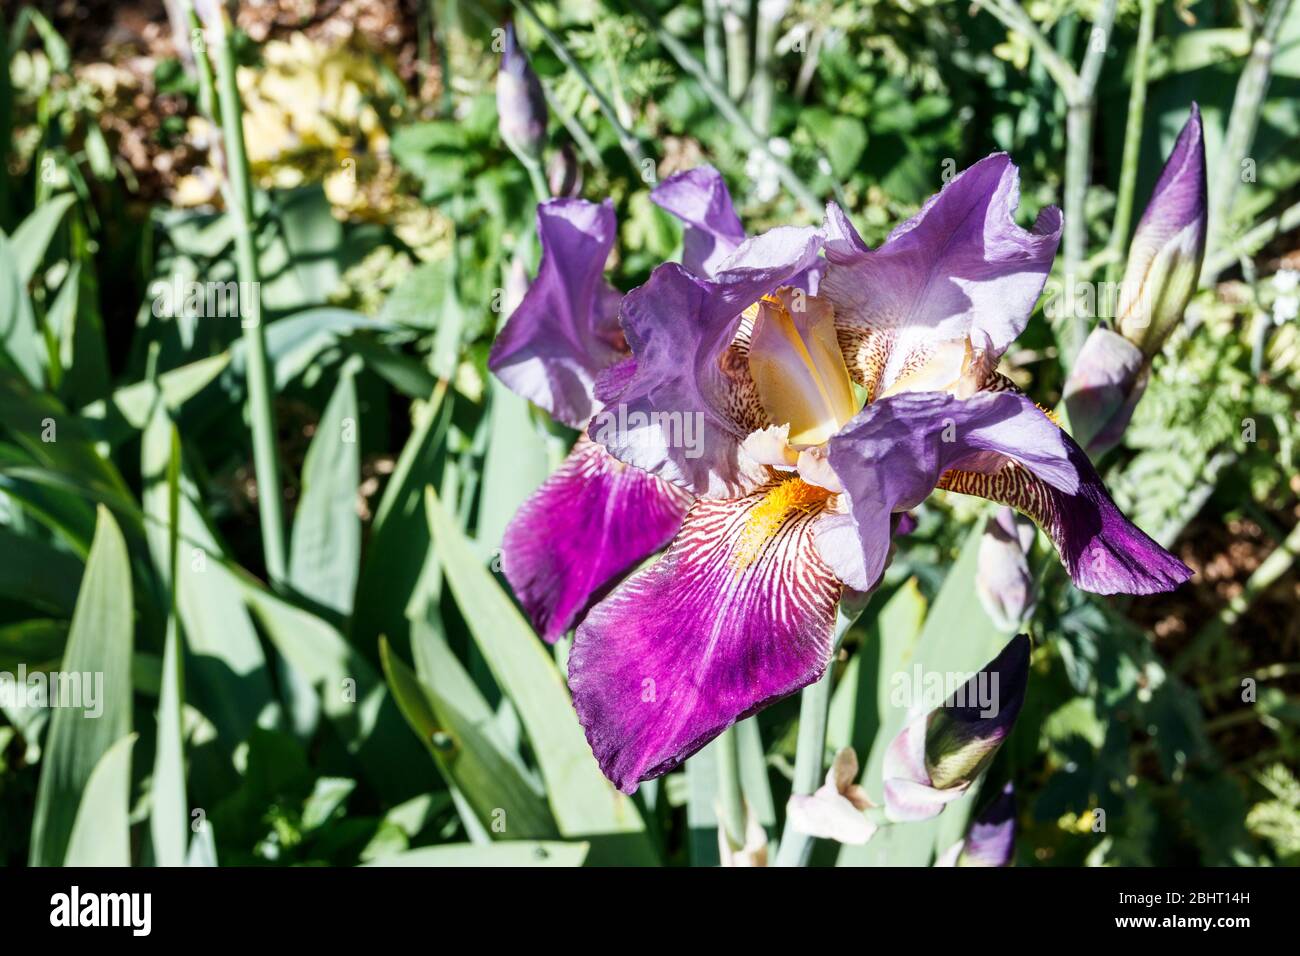 Gros plan d'un iris pourpre dans un jardin de fleurs sauvages Banque D'Images